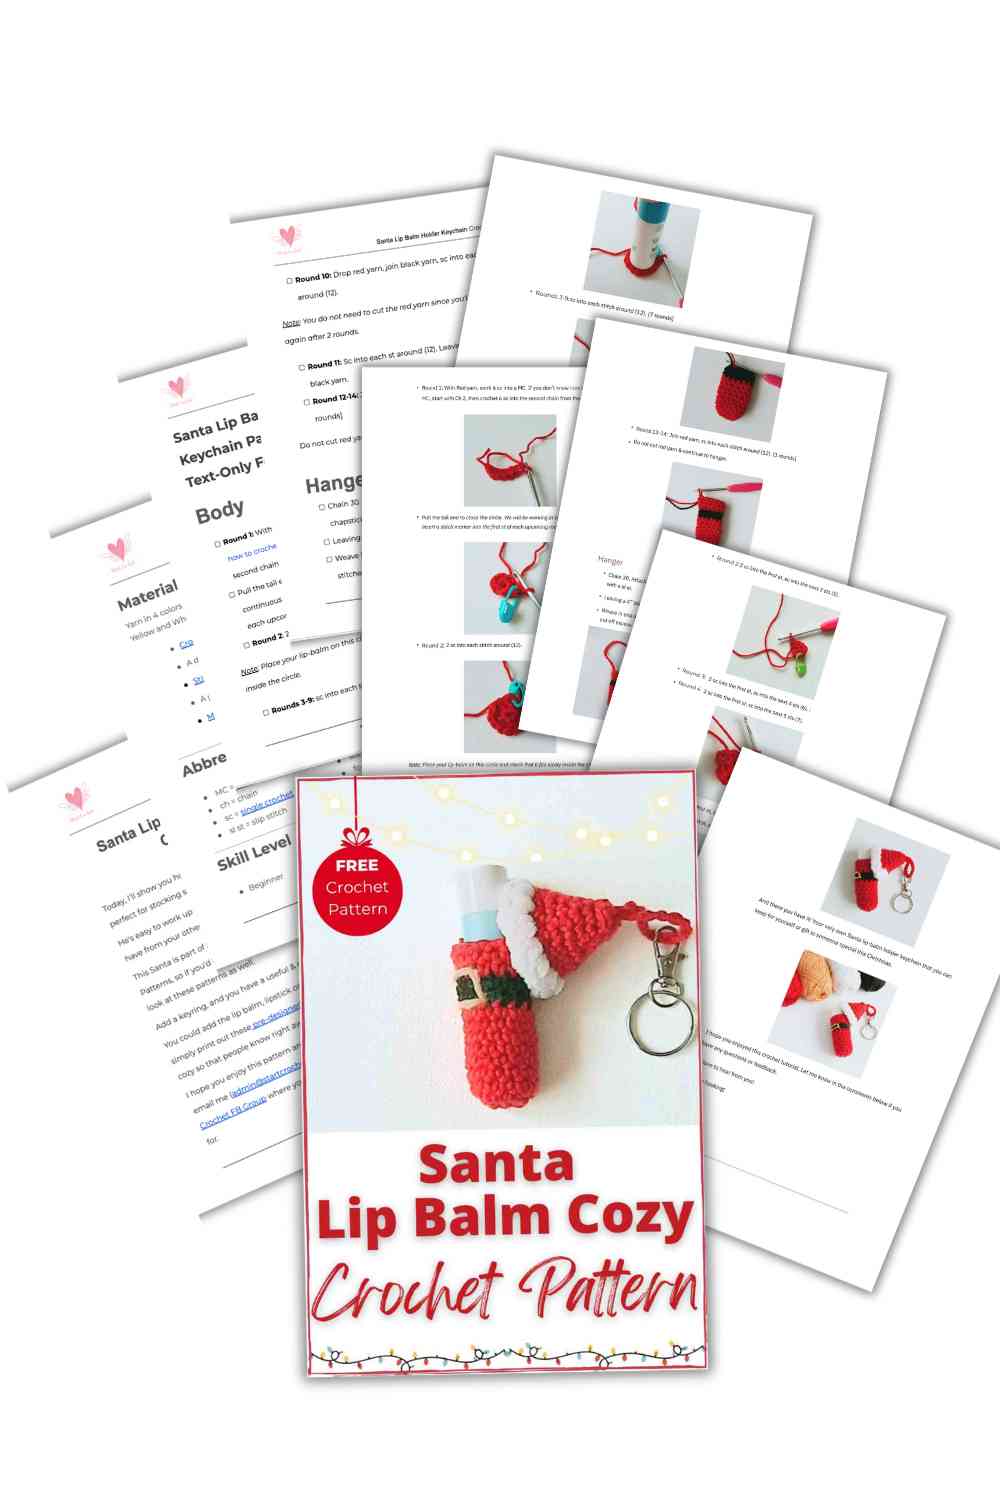 Santa Lip Balm Cozy Crochet Pattern PDF Cover